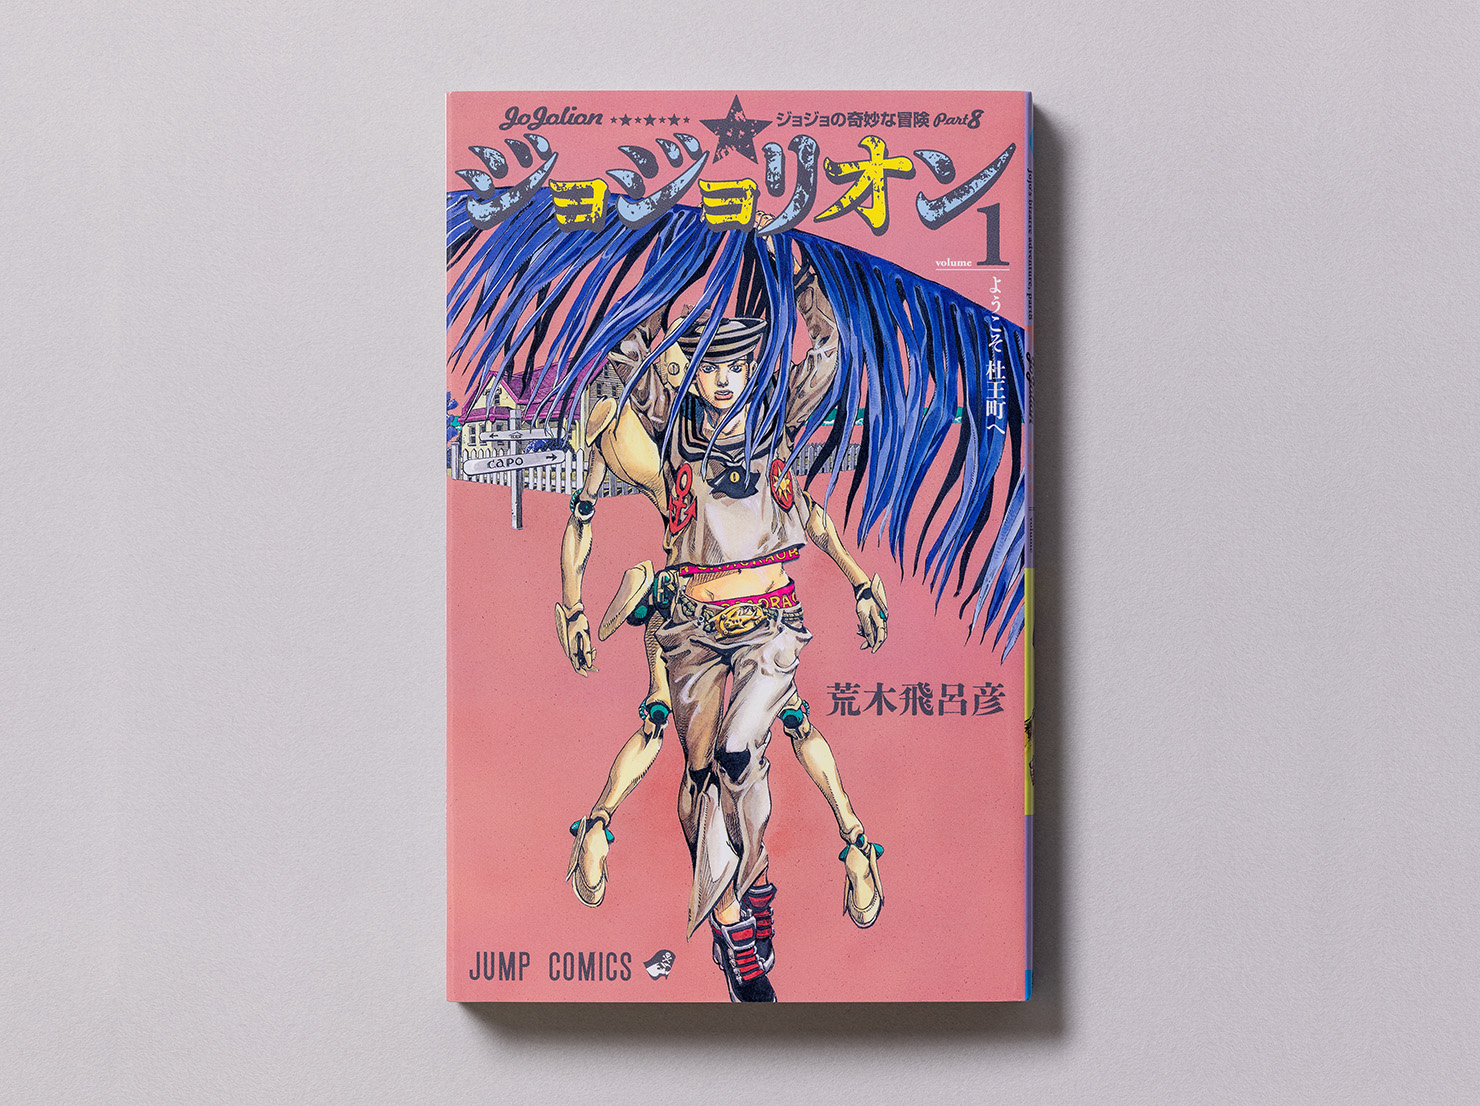 『ジョジョの奇妙な冒険 第8部 ジョジョリオン』コミックスの第1巻